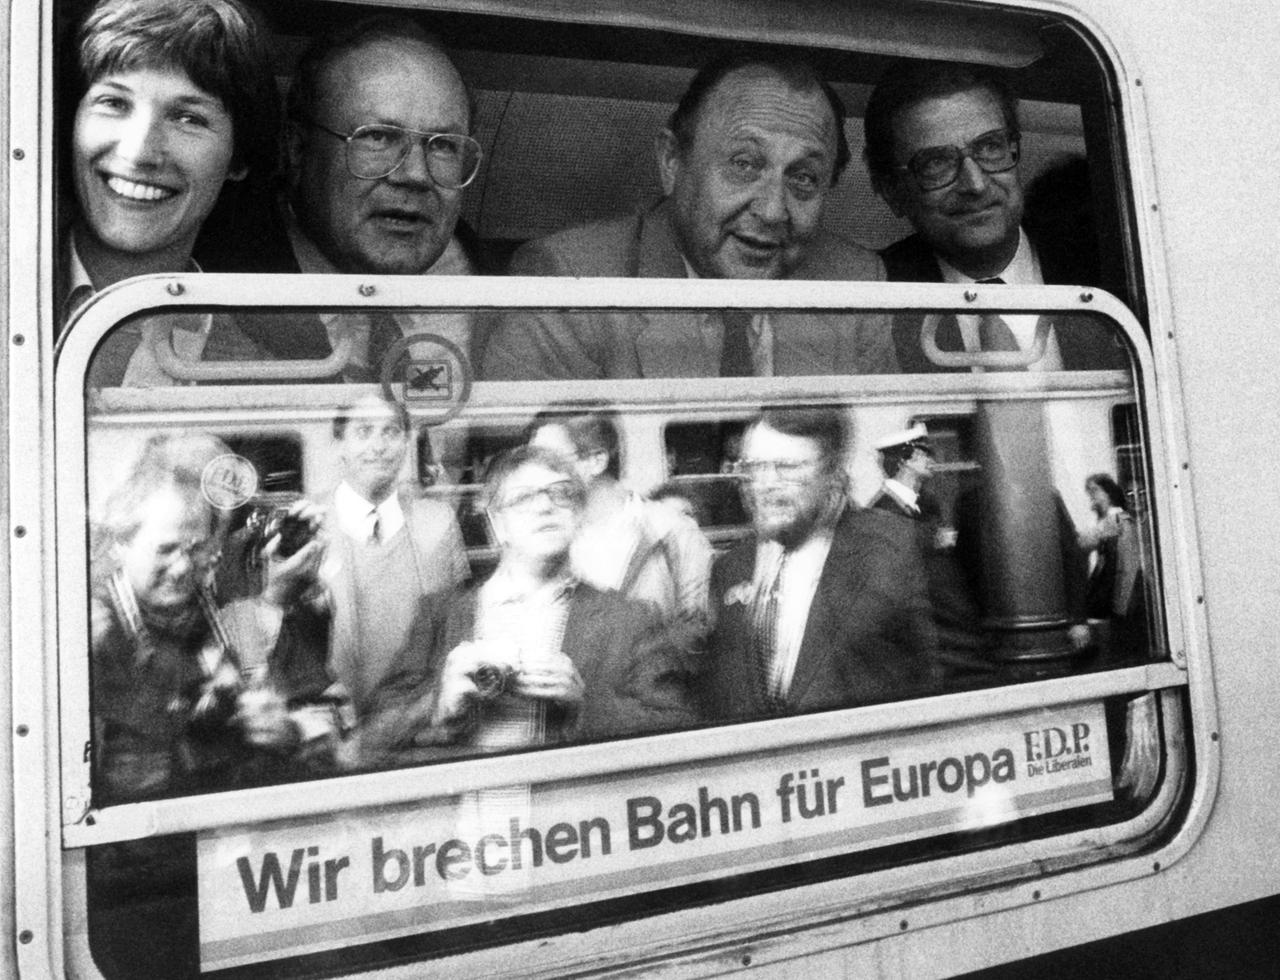 Das waren noch Zeiten: Die FDP macht 1984 Wahlkampf für das Europaparlament mit einem "Europazug".